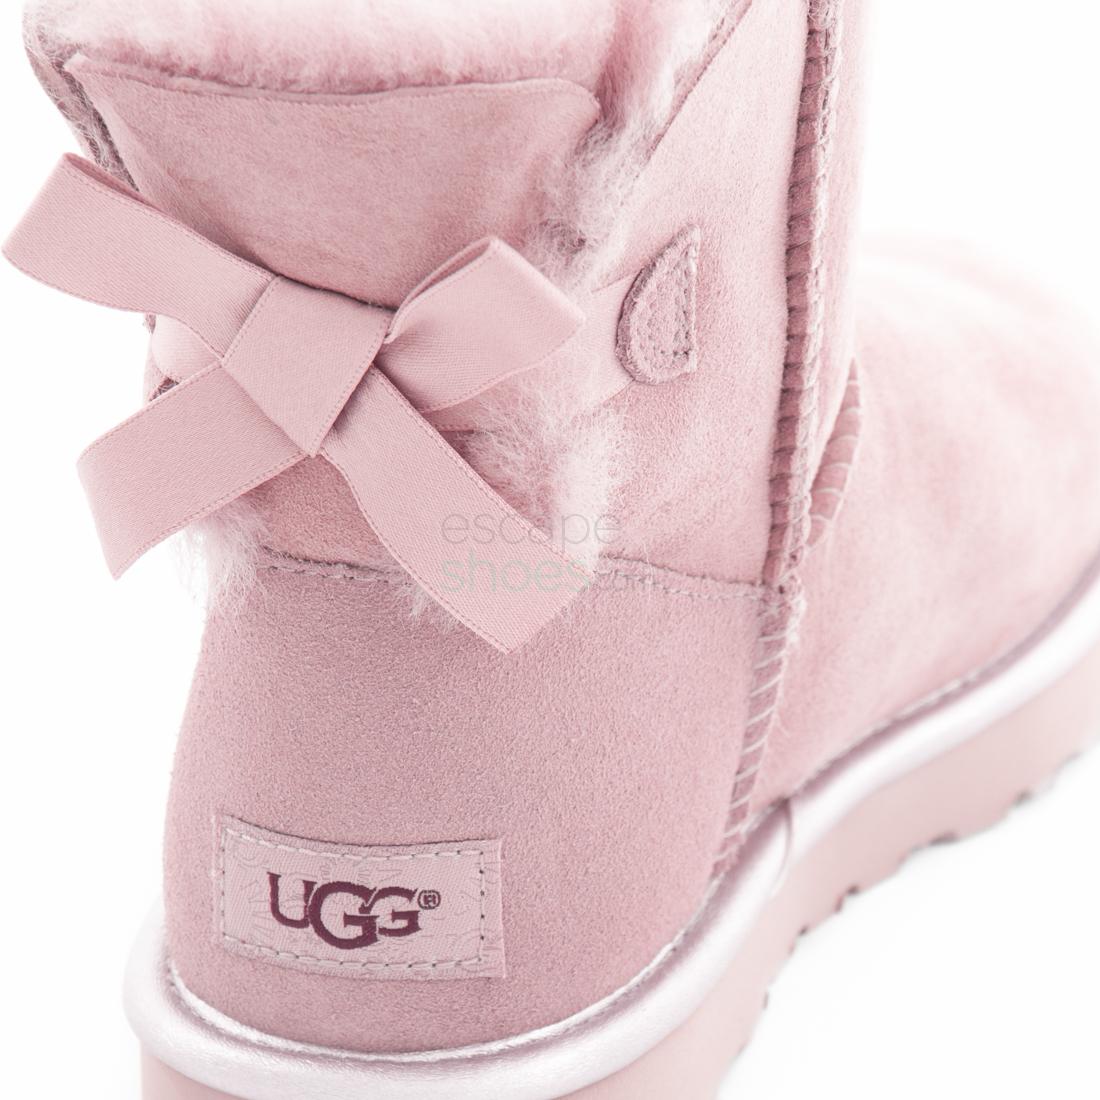 ugg boots rosa metallic